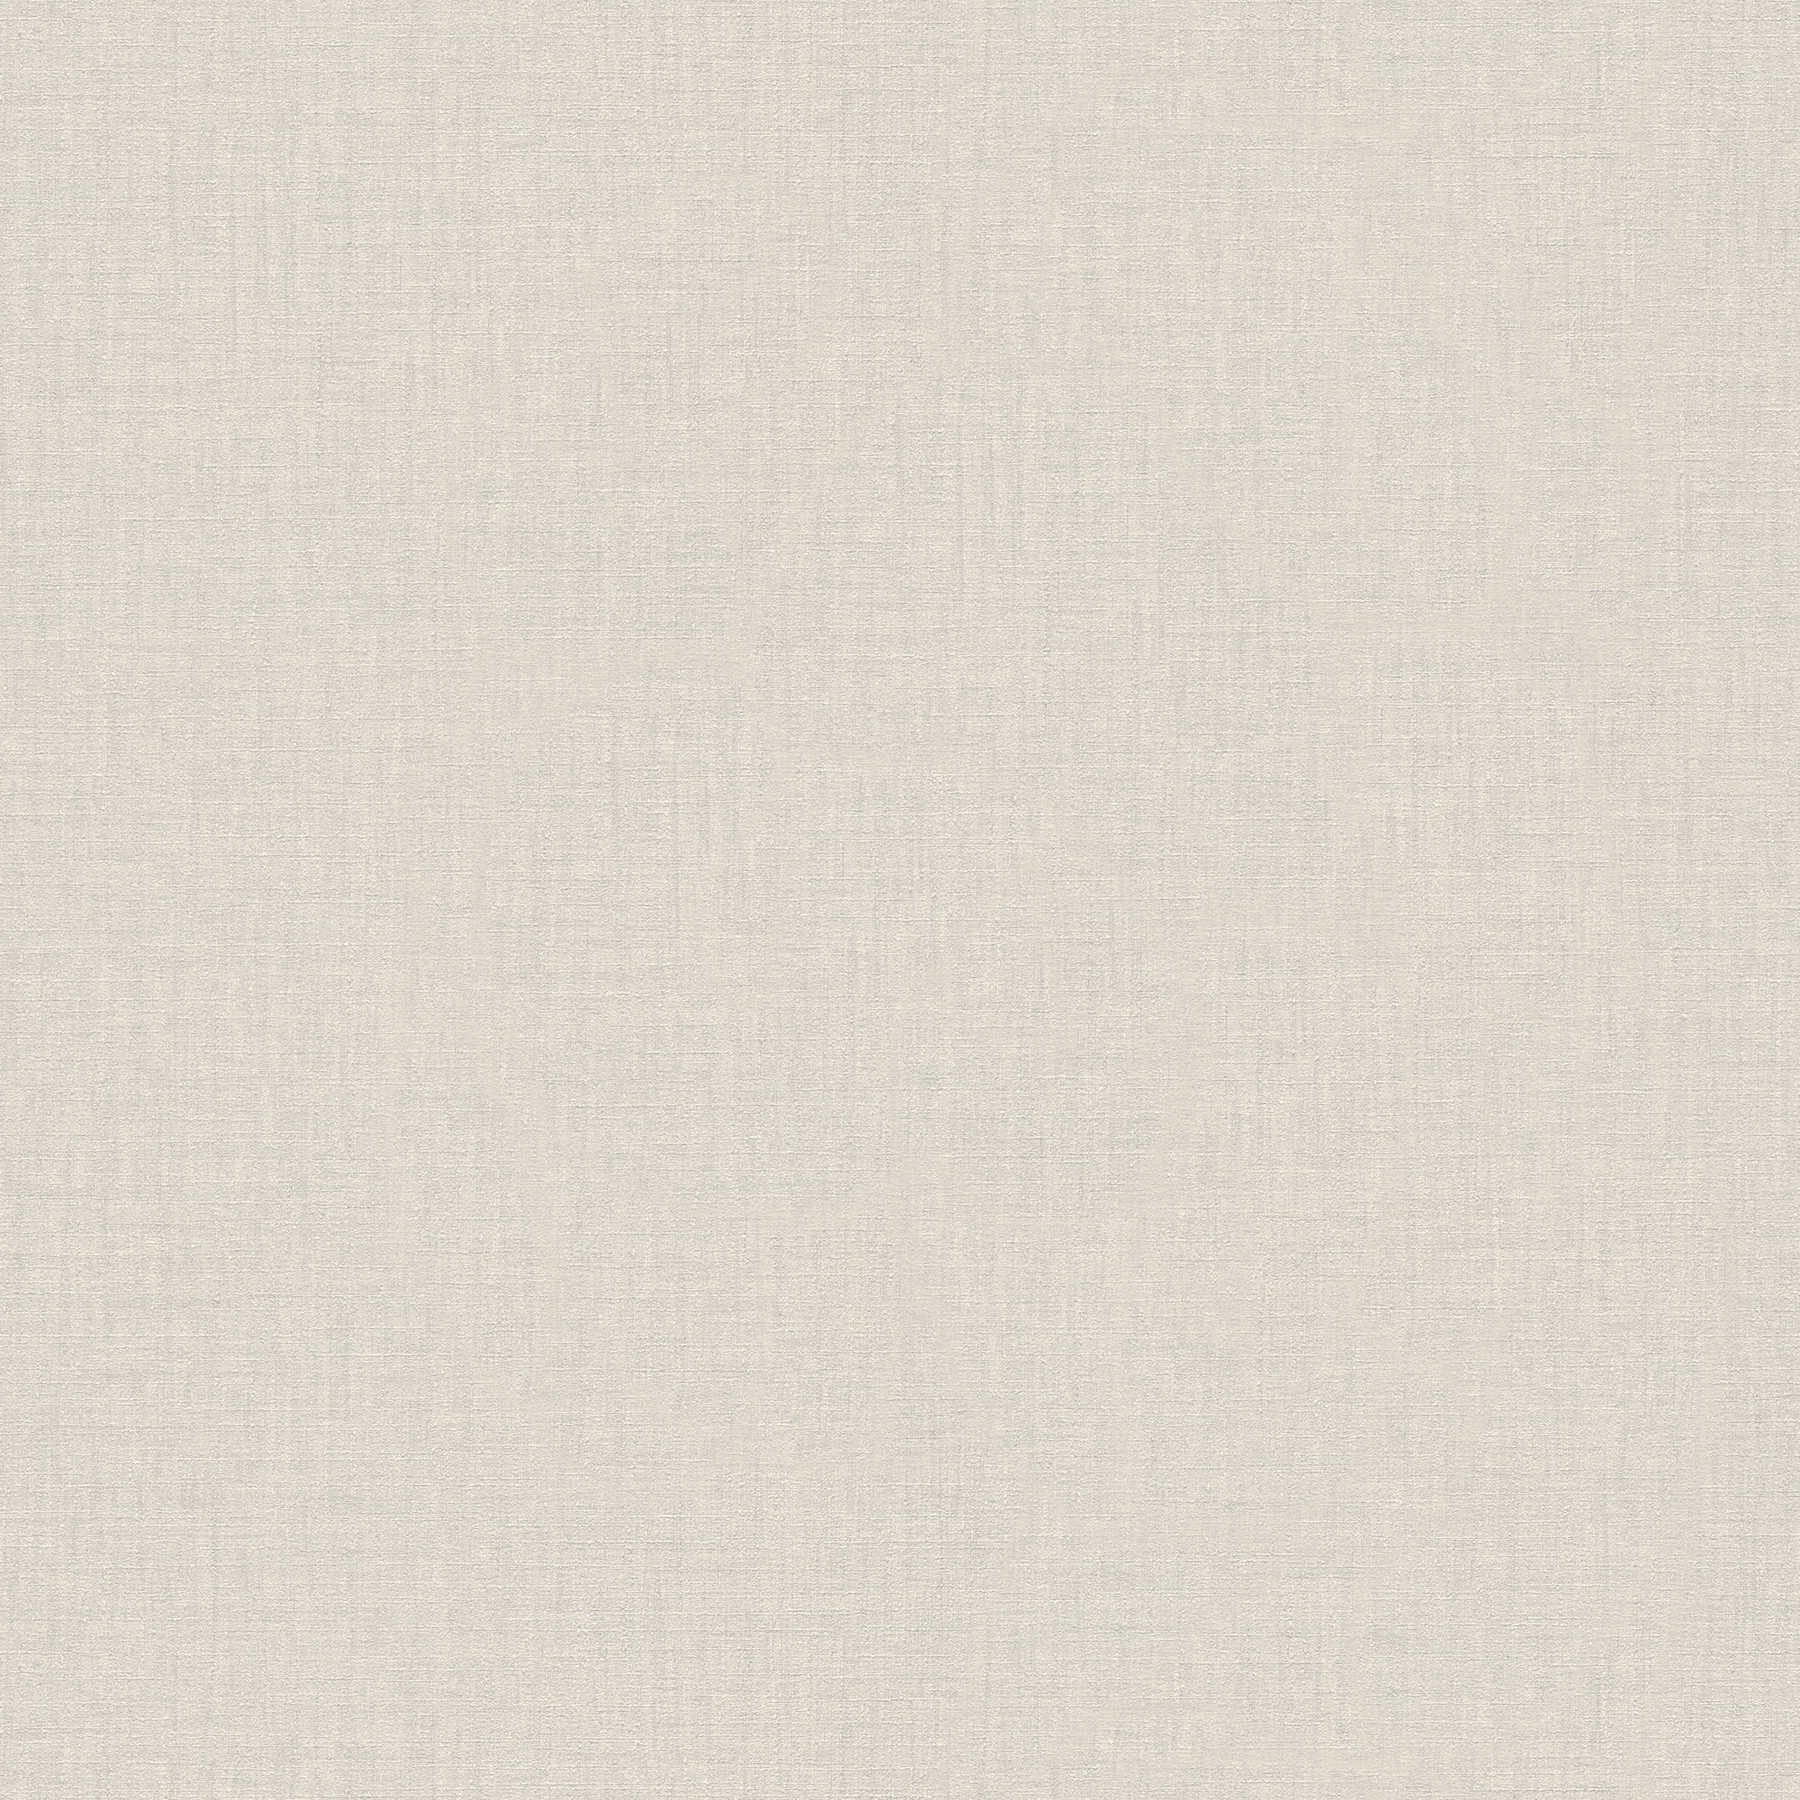 VERSACE plain wallpaper - white mottled - cream, white, grey
